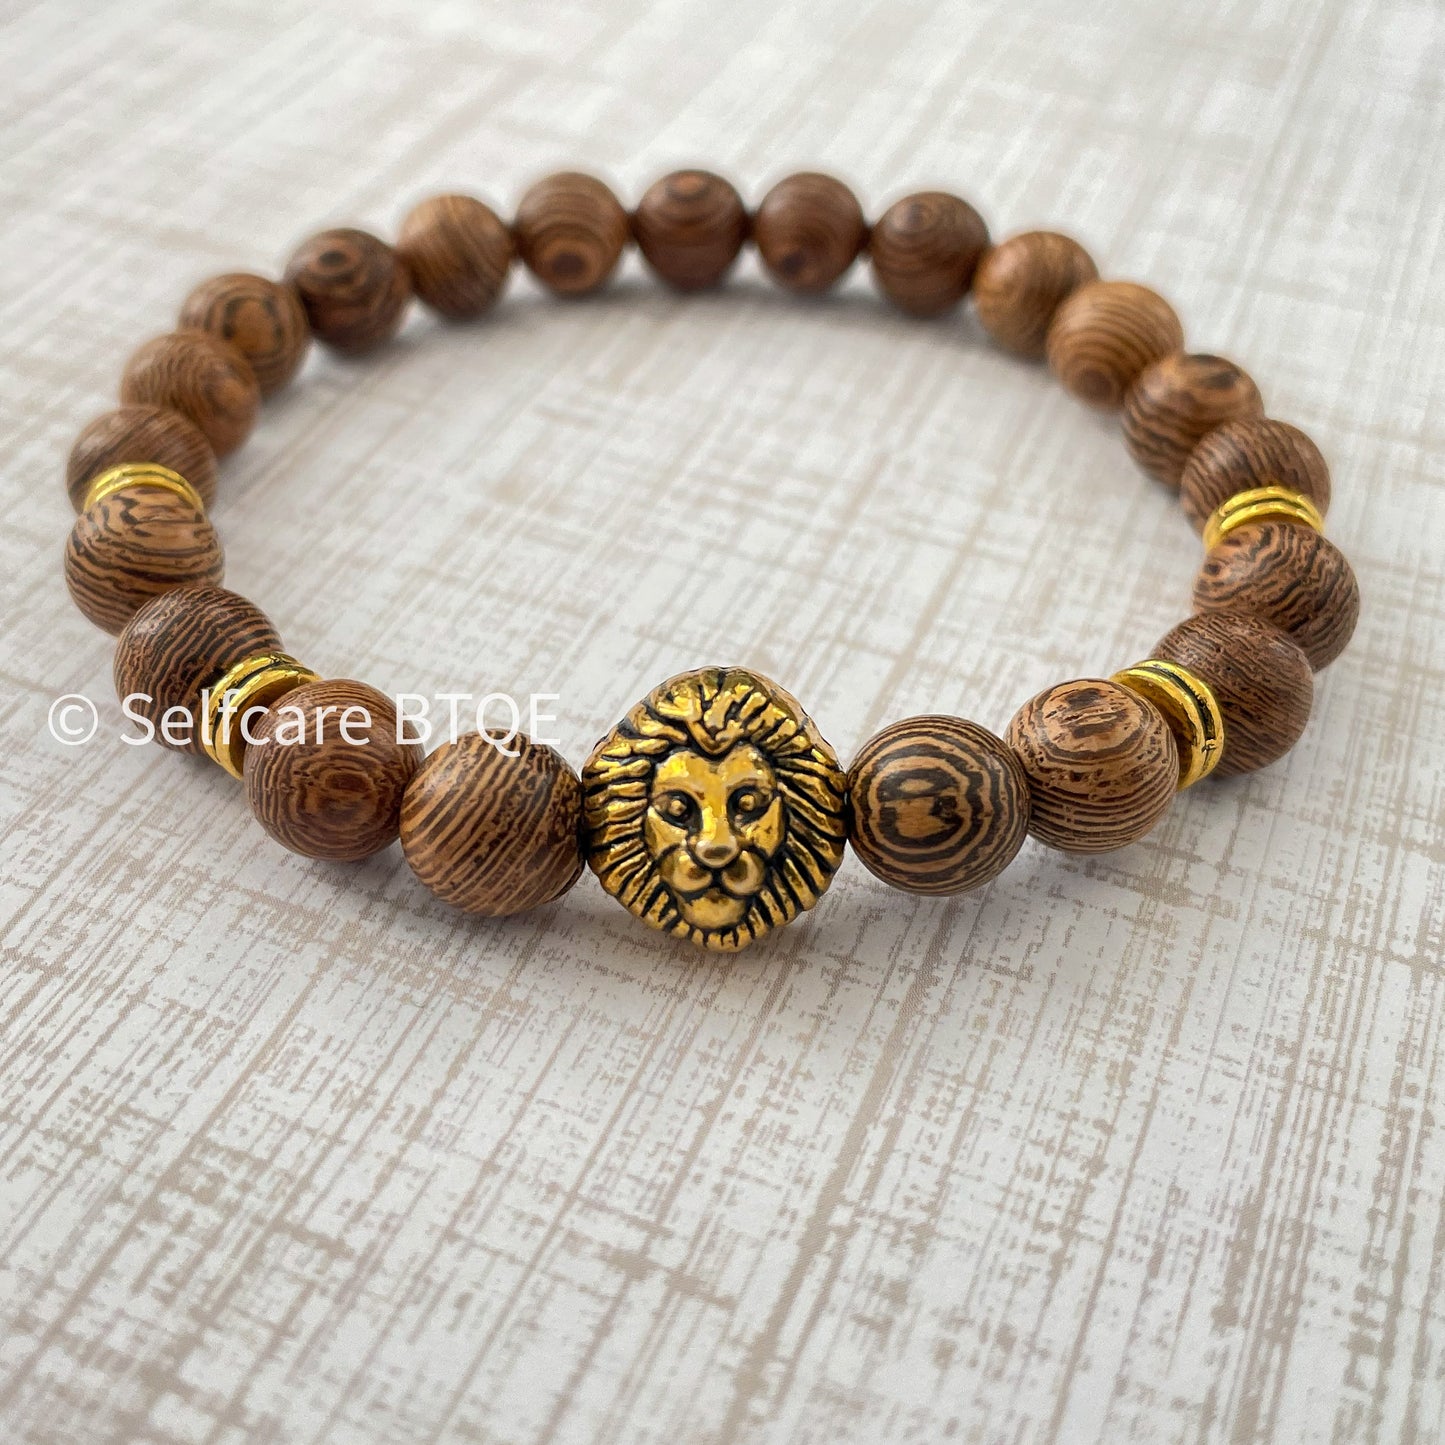 Lion Head Bead in Tibetan Wood Bracelet